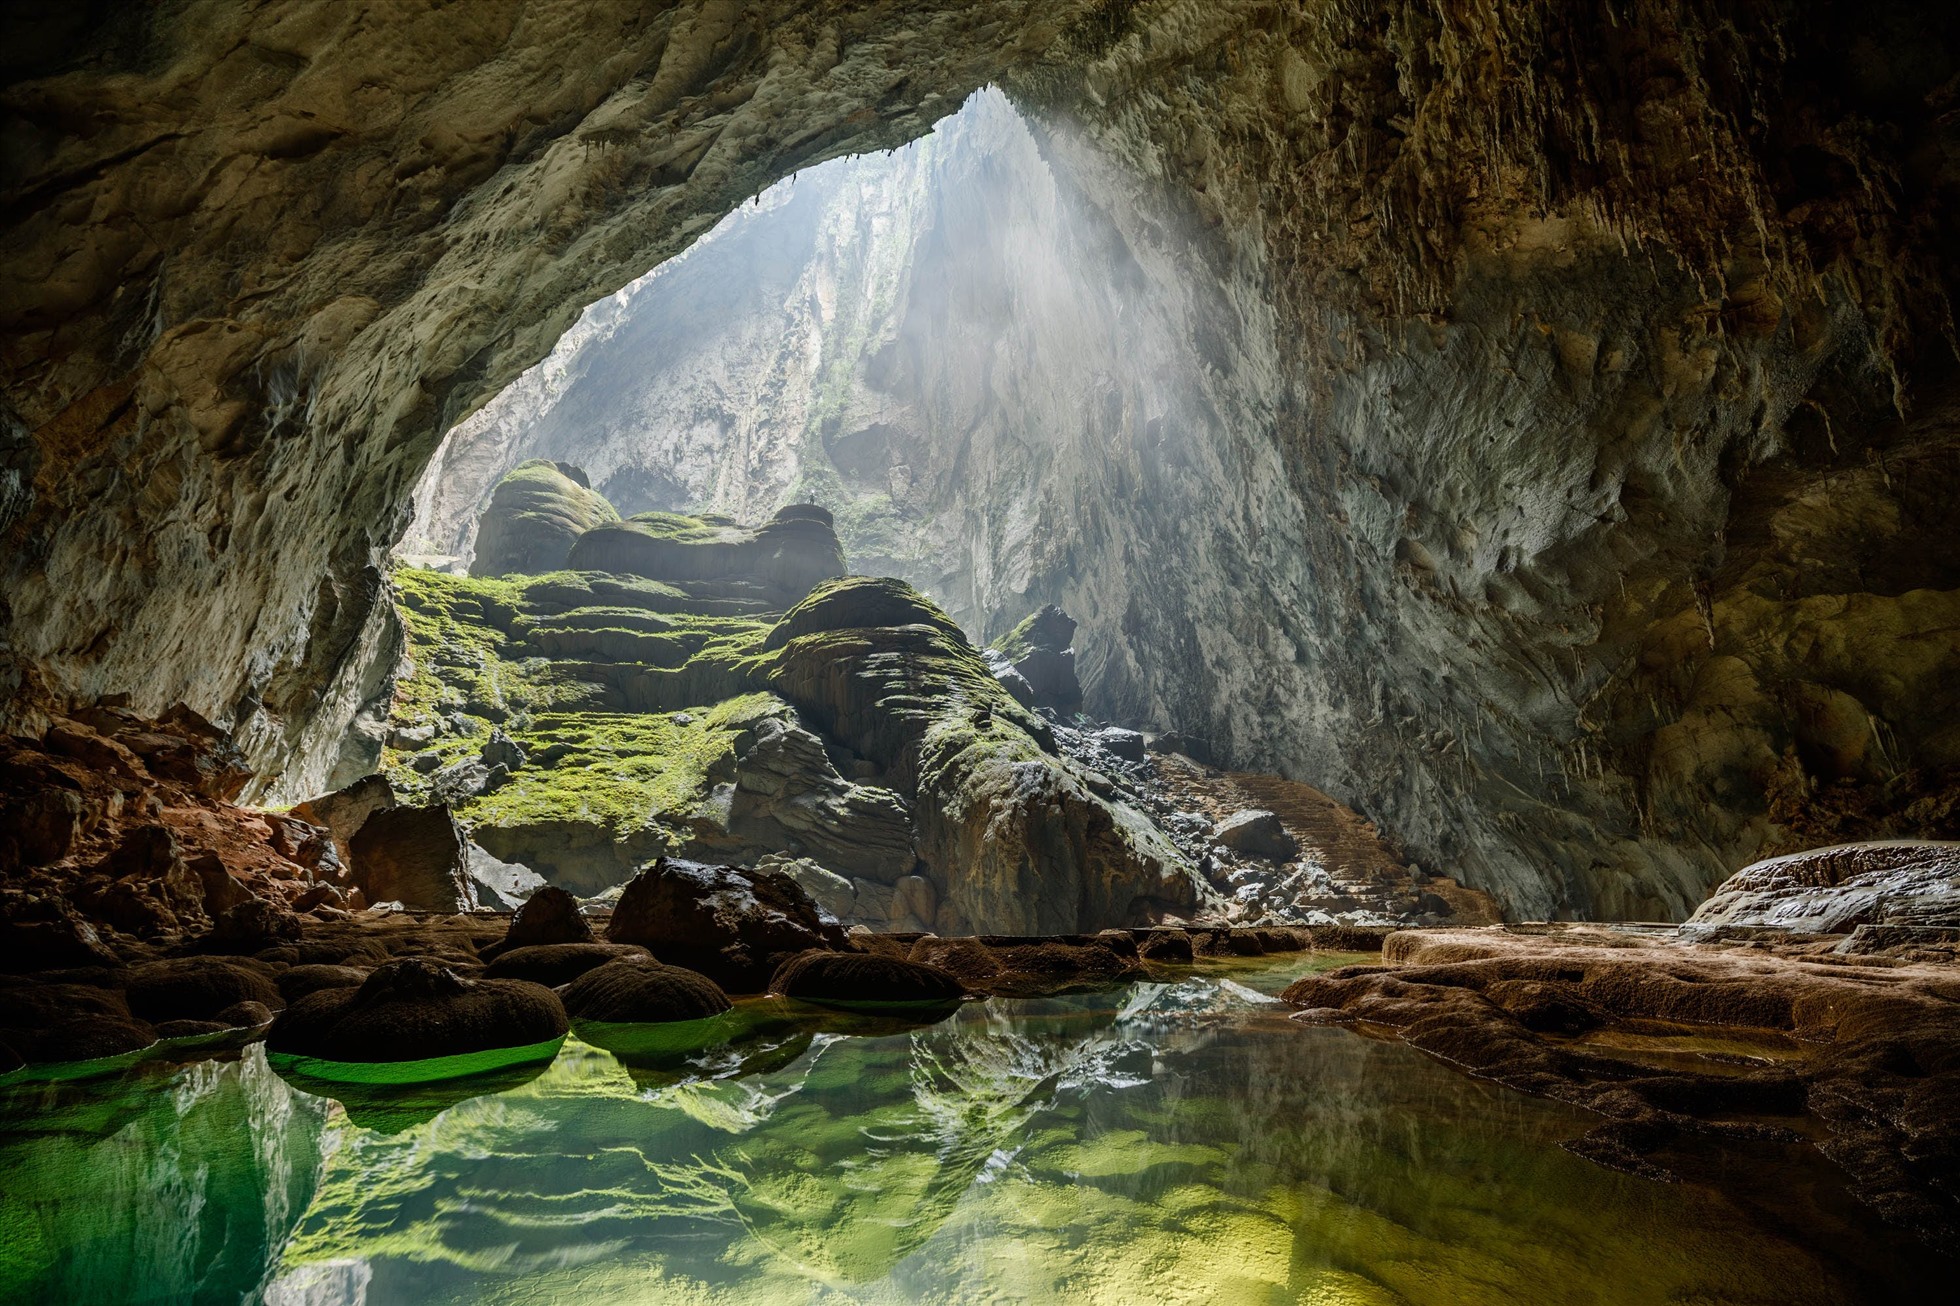 Bạn đã bao giờ đi khám phá hang động tự nhiên chưa? Đó là một chuyến phiêu lưu đầy thú vị và mạo hiểm. Trong những động hàng triệu năm tuổi, bạn sẽ được chiêm ngưỡng những hình ảnh đẹp như cổ tích và khám phá sự độc đáo của thiên nhiên.